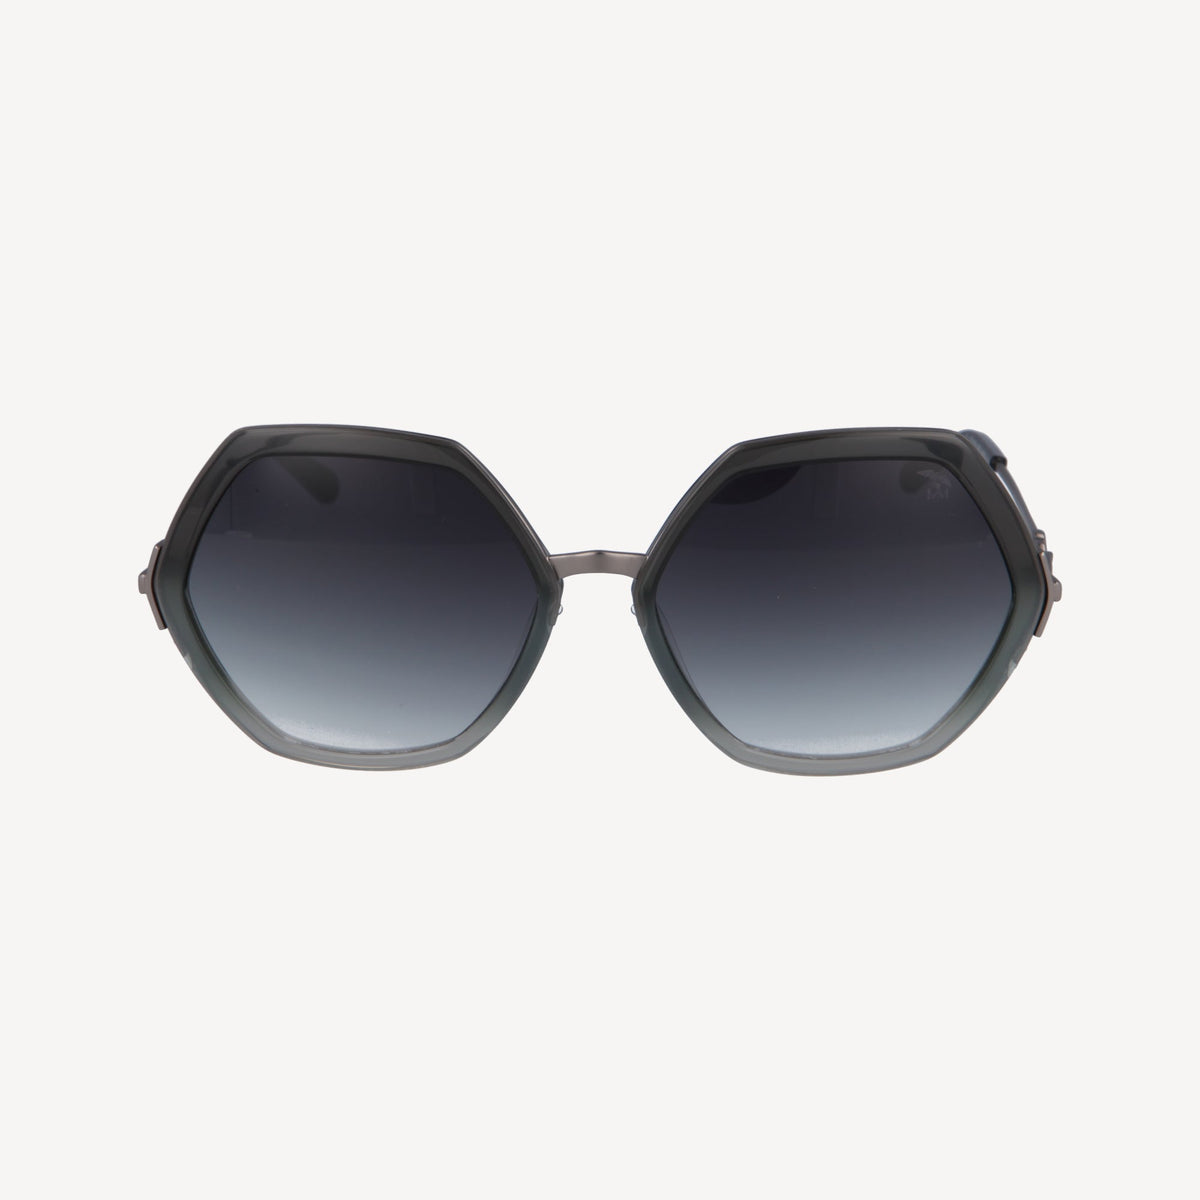 AGNEL | Sunglasses classic black/old silver